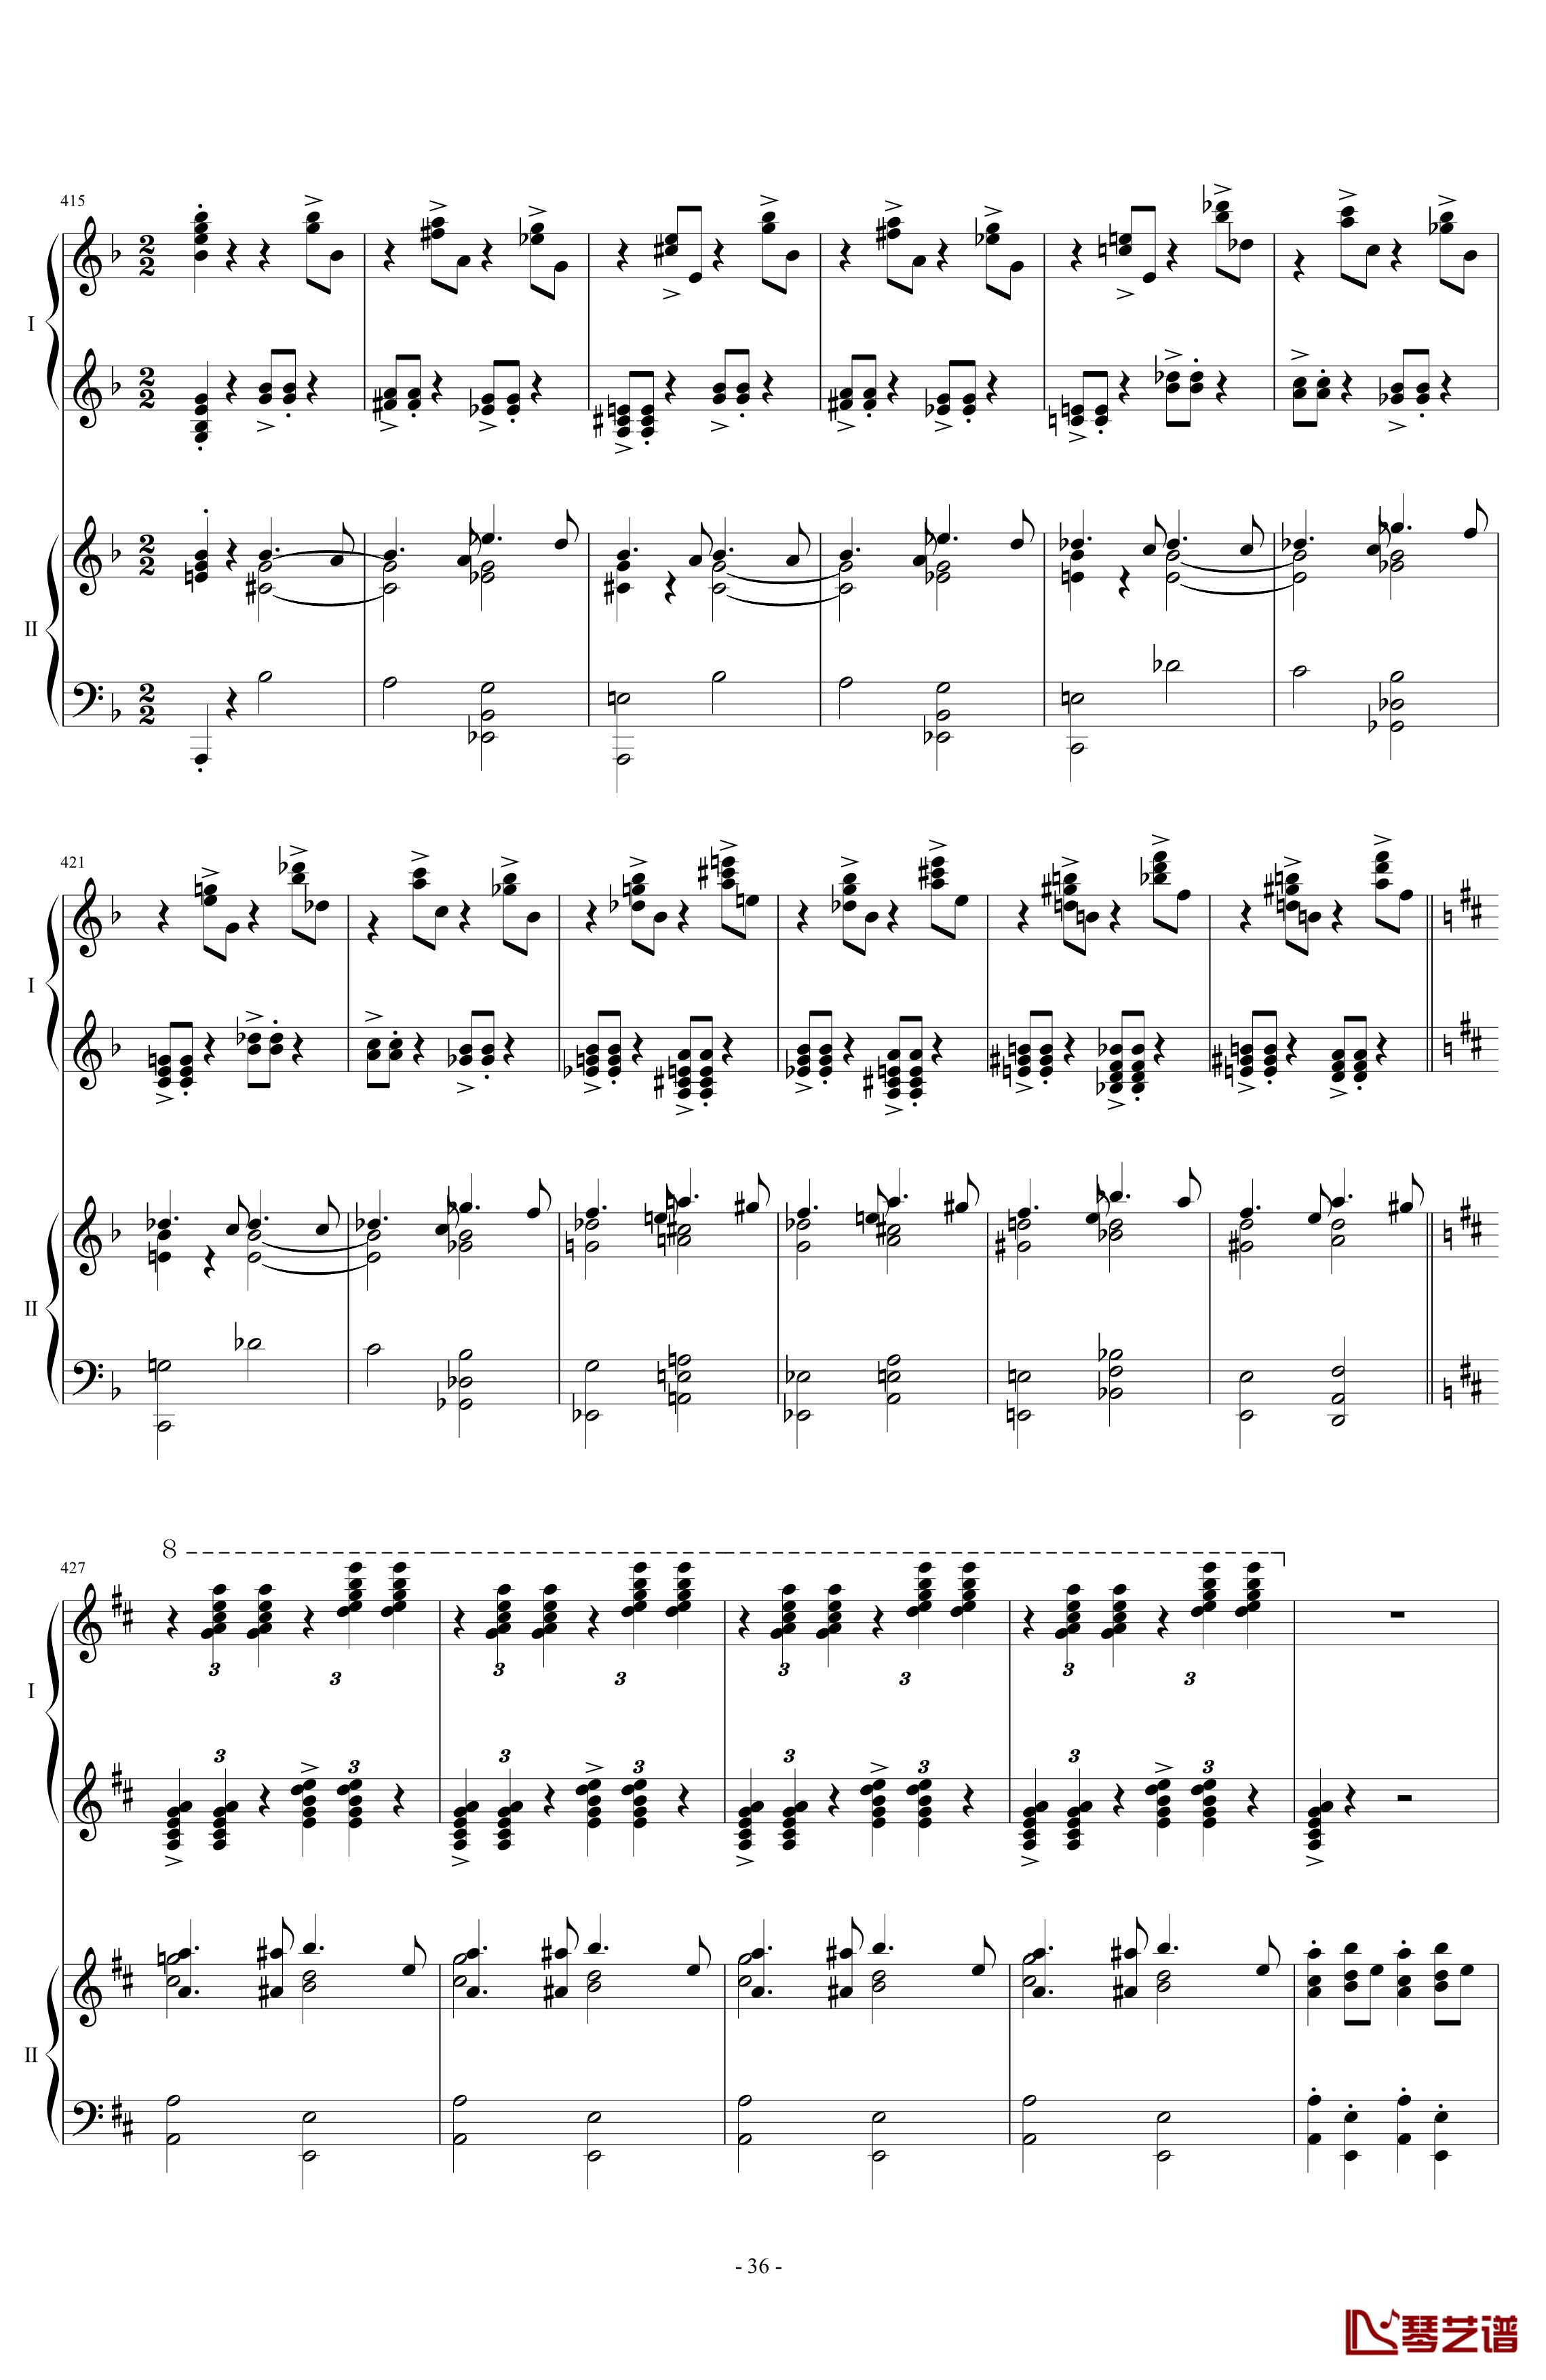 拉三第三乐章41页双钢琴钢琴谱-最难钢琴曲-拉赫马尼若夫36